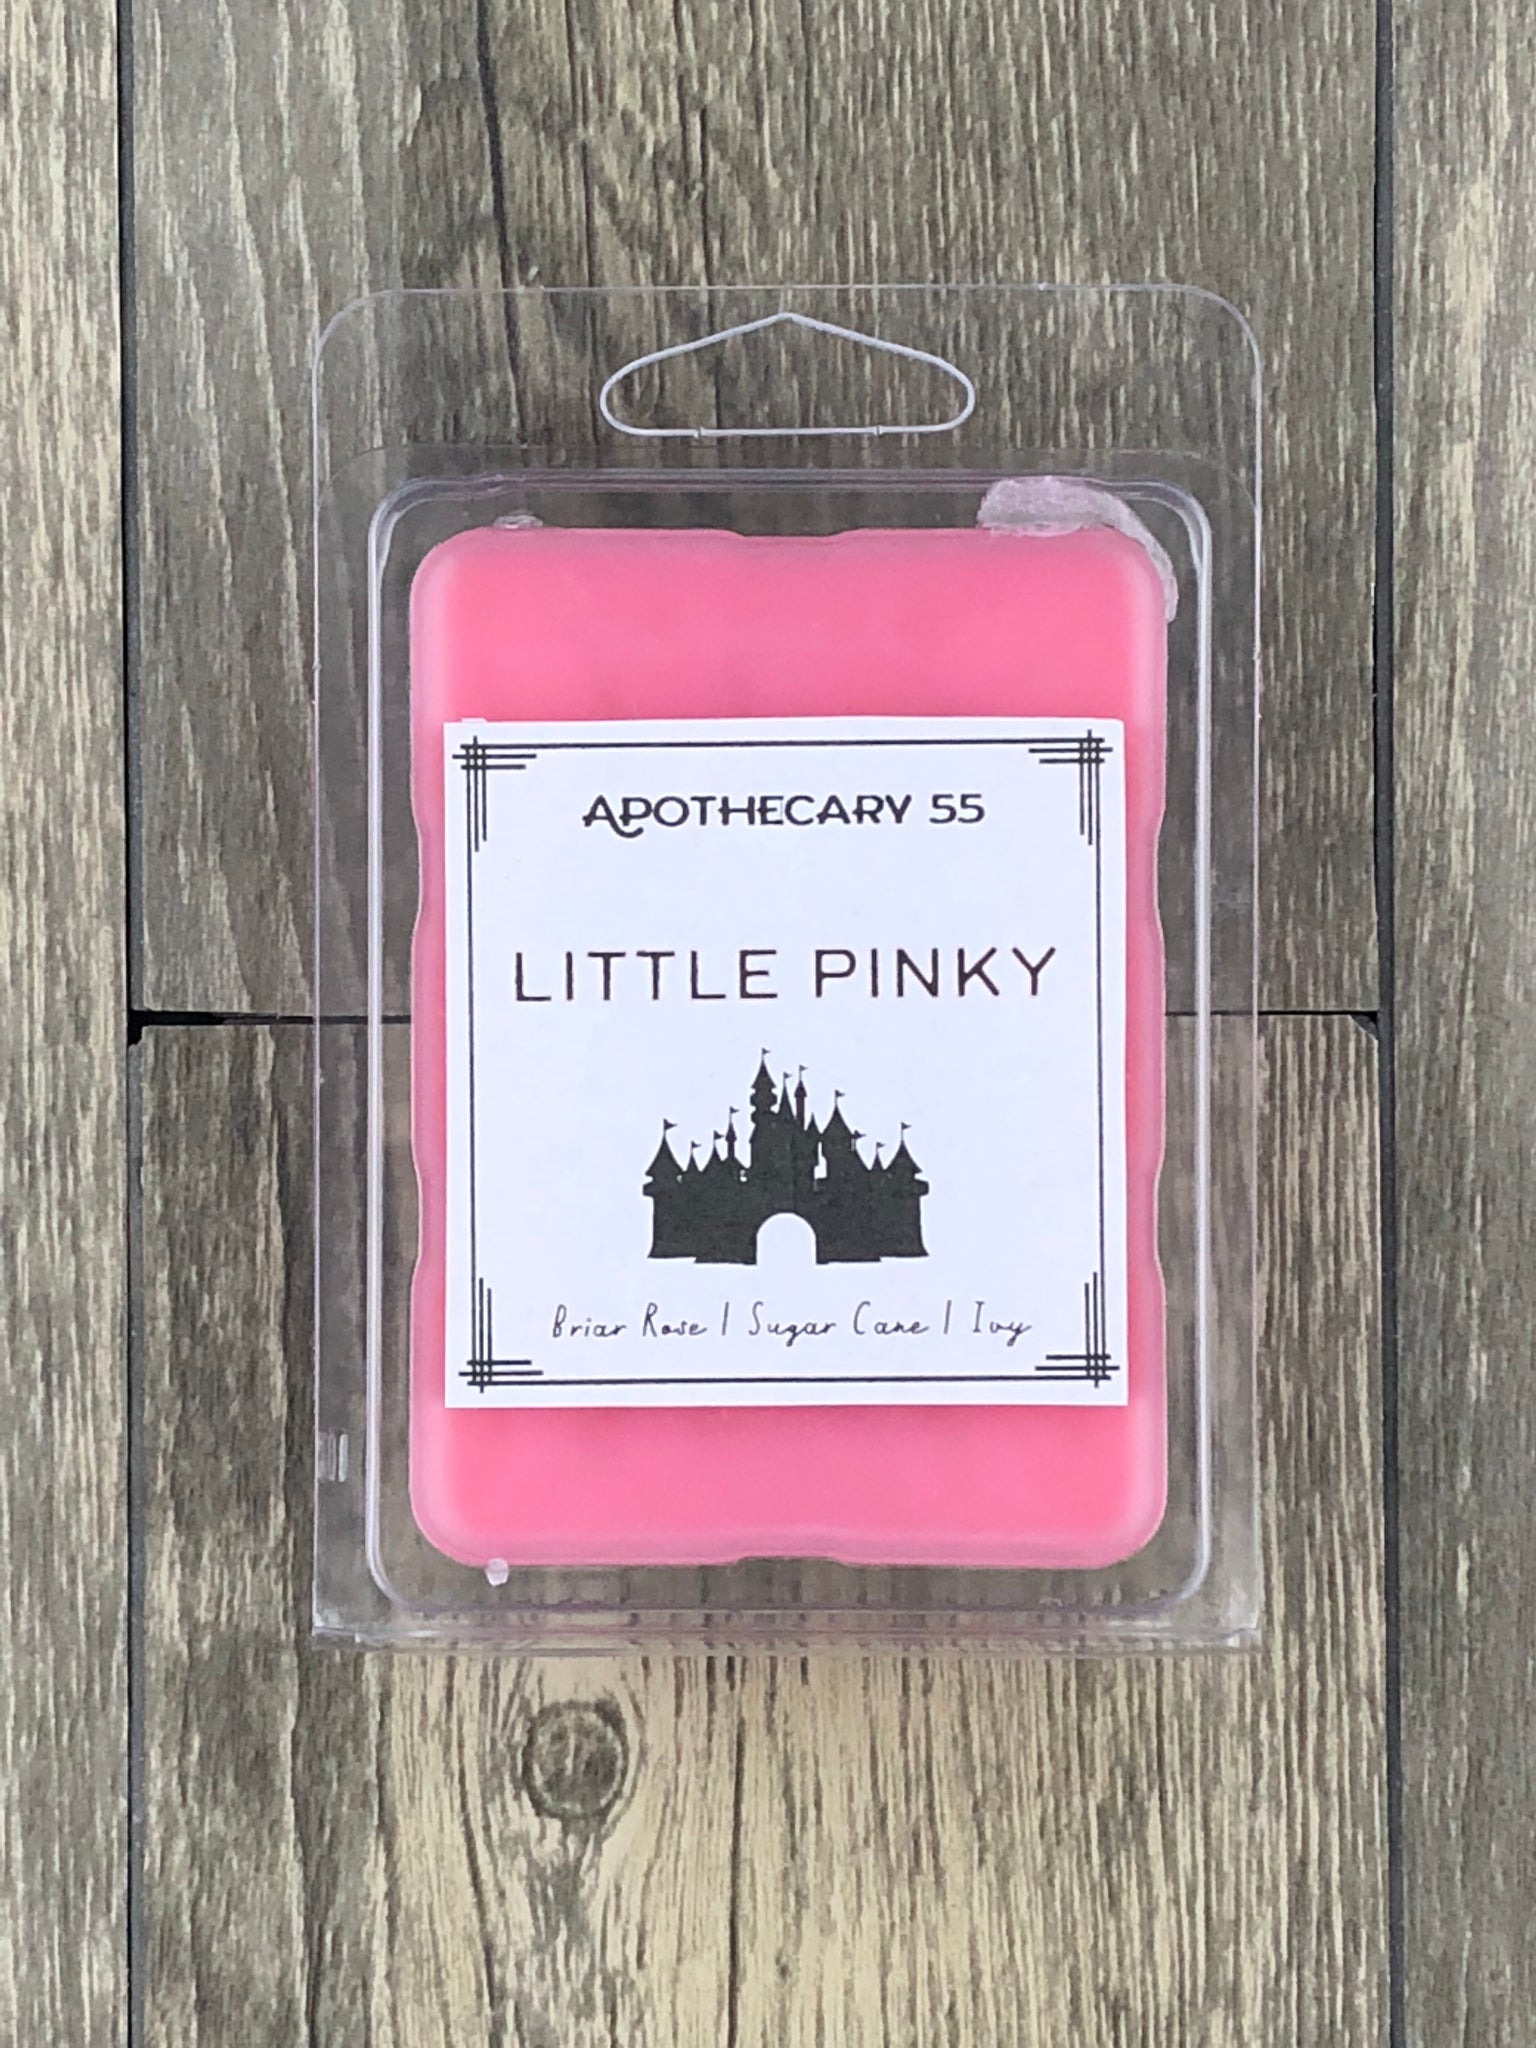 Little Pinky wax melt